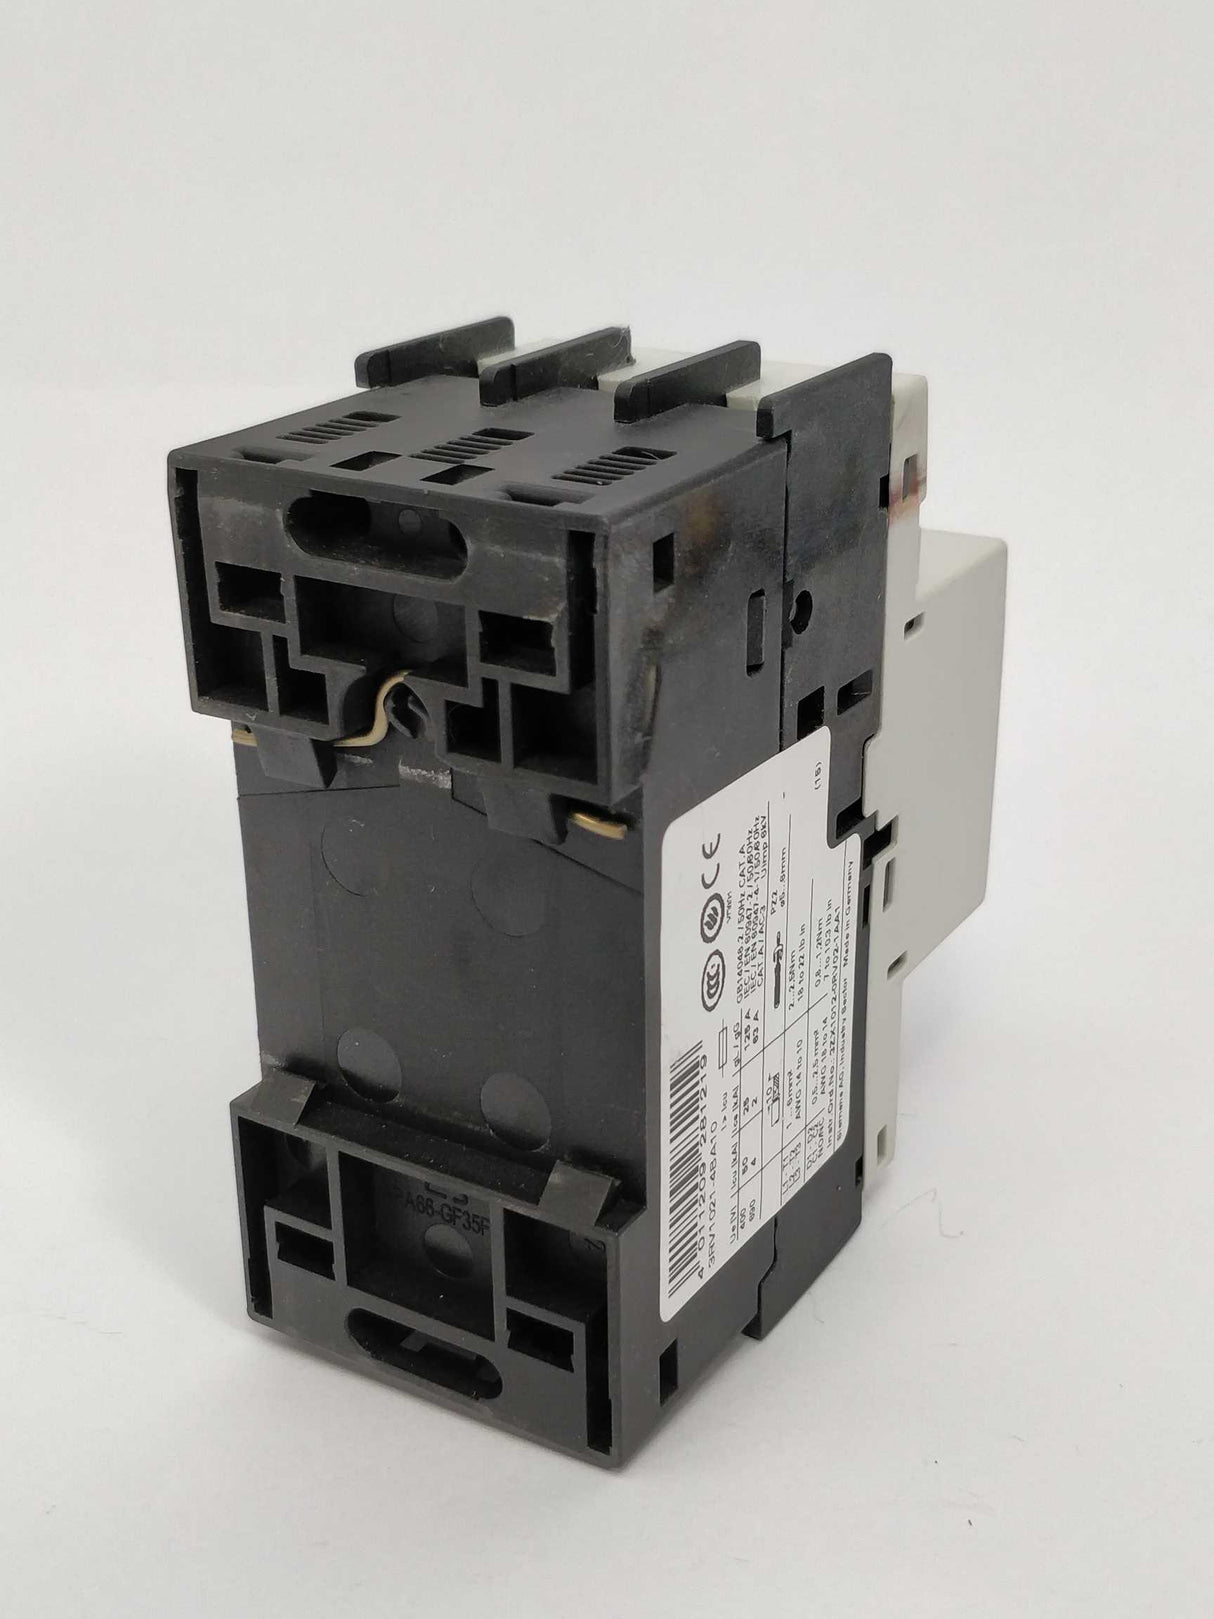 Siemens 3RV1021-4BA10 Circuit breaker